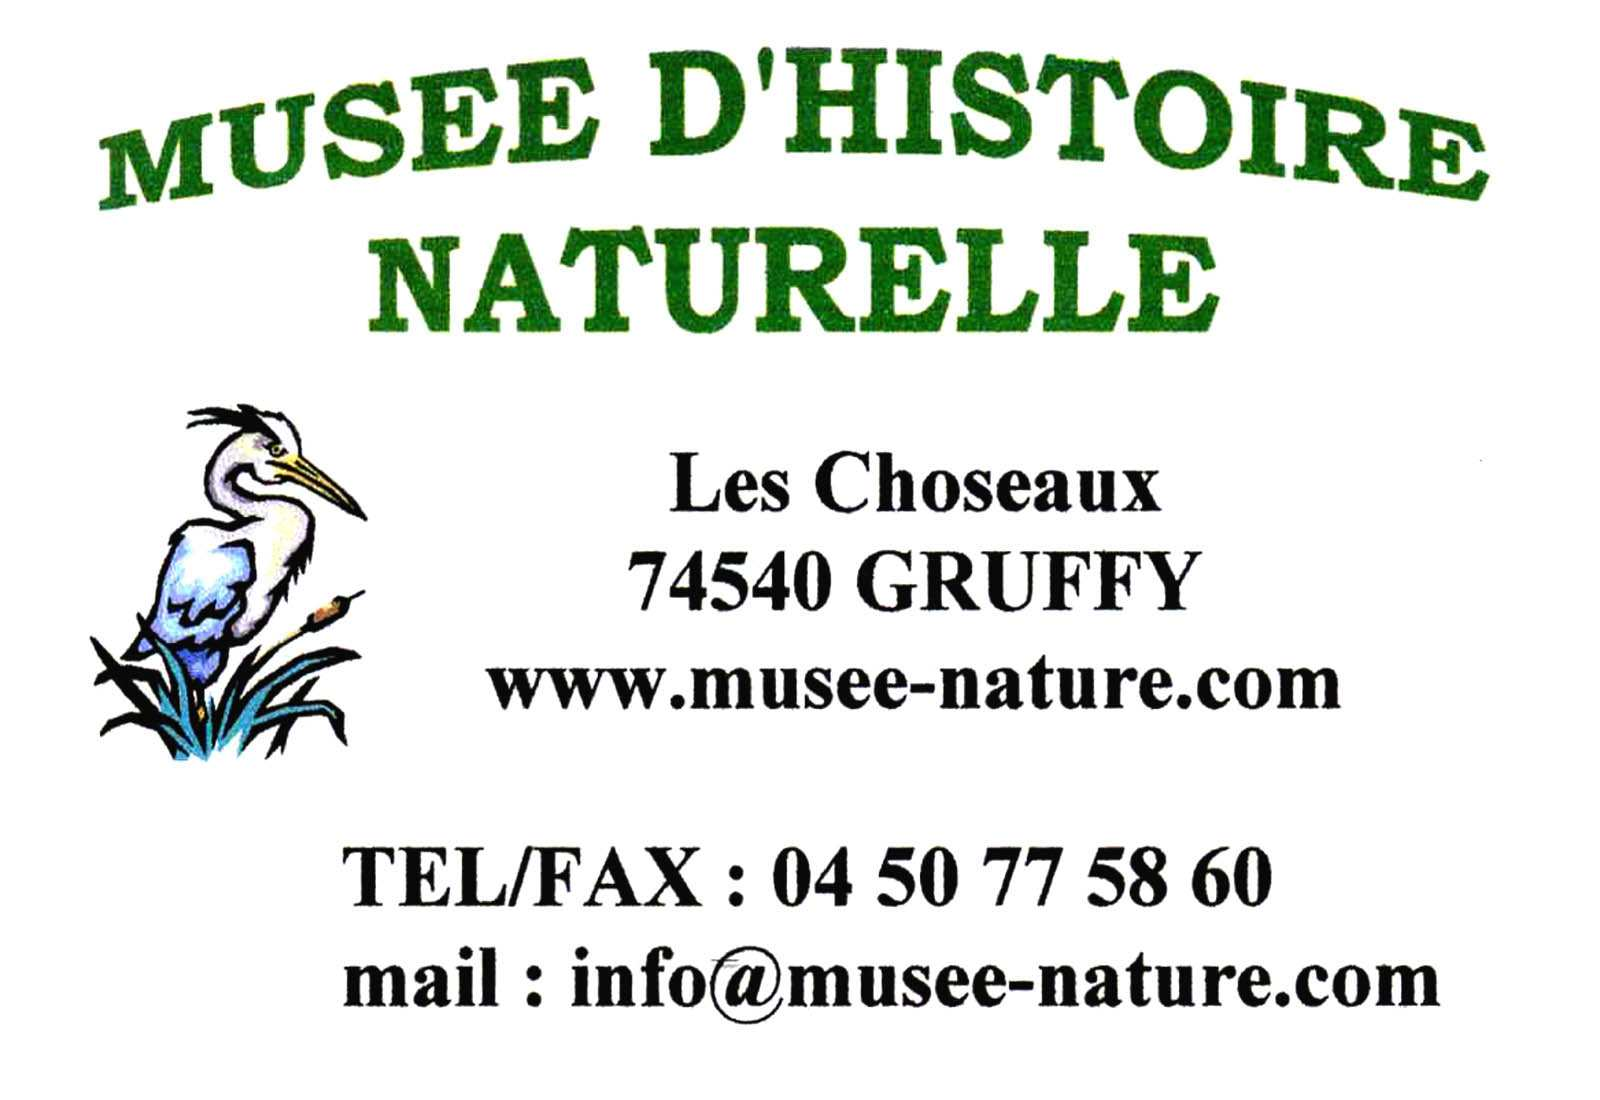 En Pratique Méthodes Le Musée d histoire naturelle de Gruffy allie activités en intérieur et en extérieur.